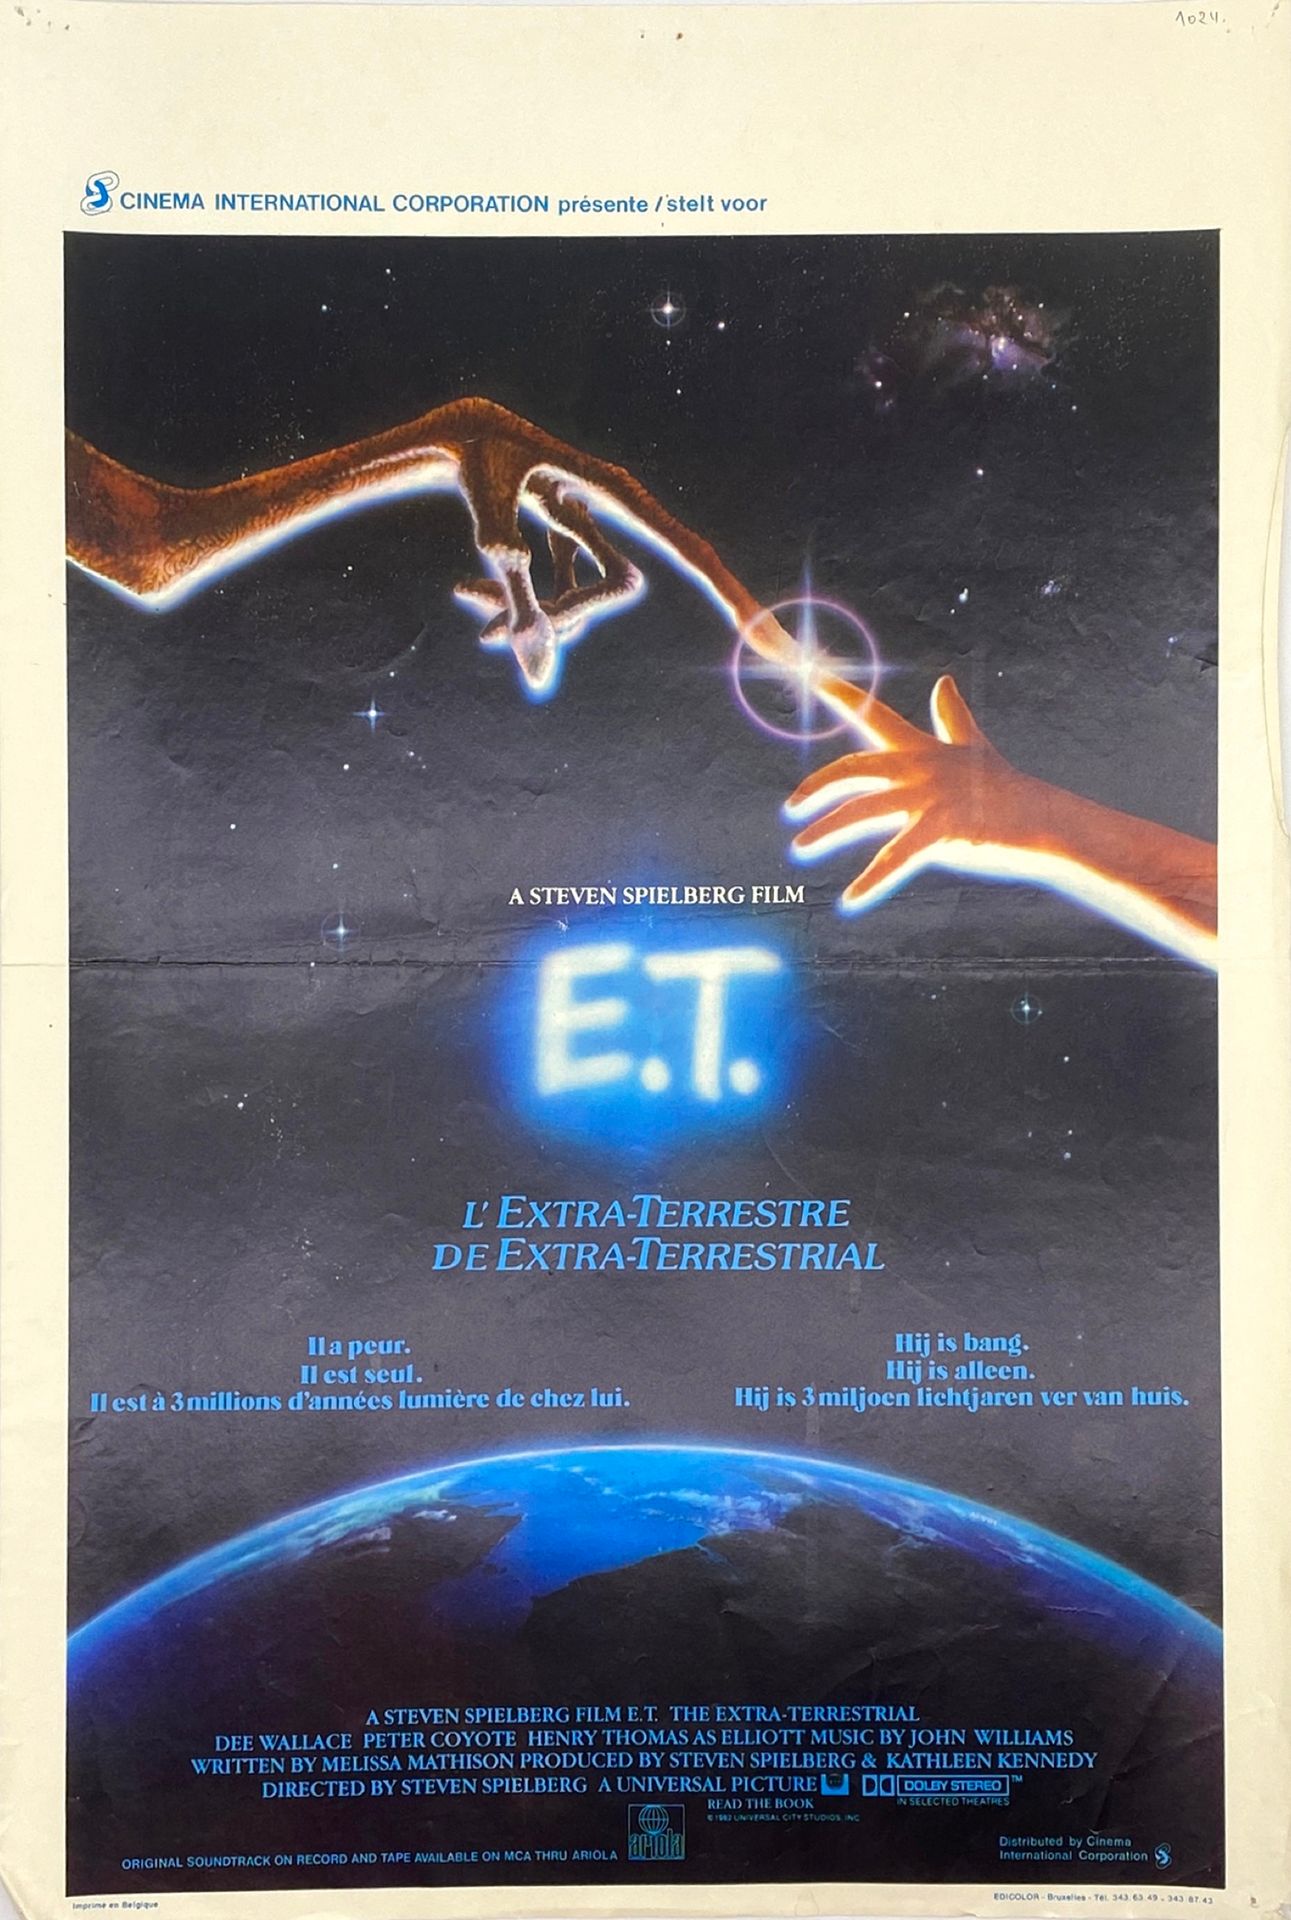 Null 
[CINEMA] - Poster "E.T. Der Außerirdische" von Steven Spielberg. 
Gedruckt&hellip;